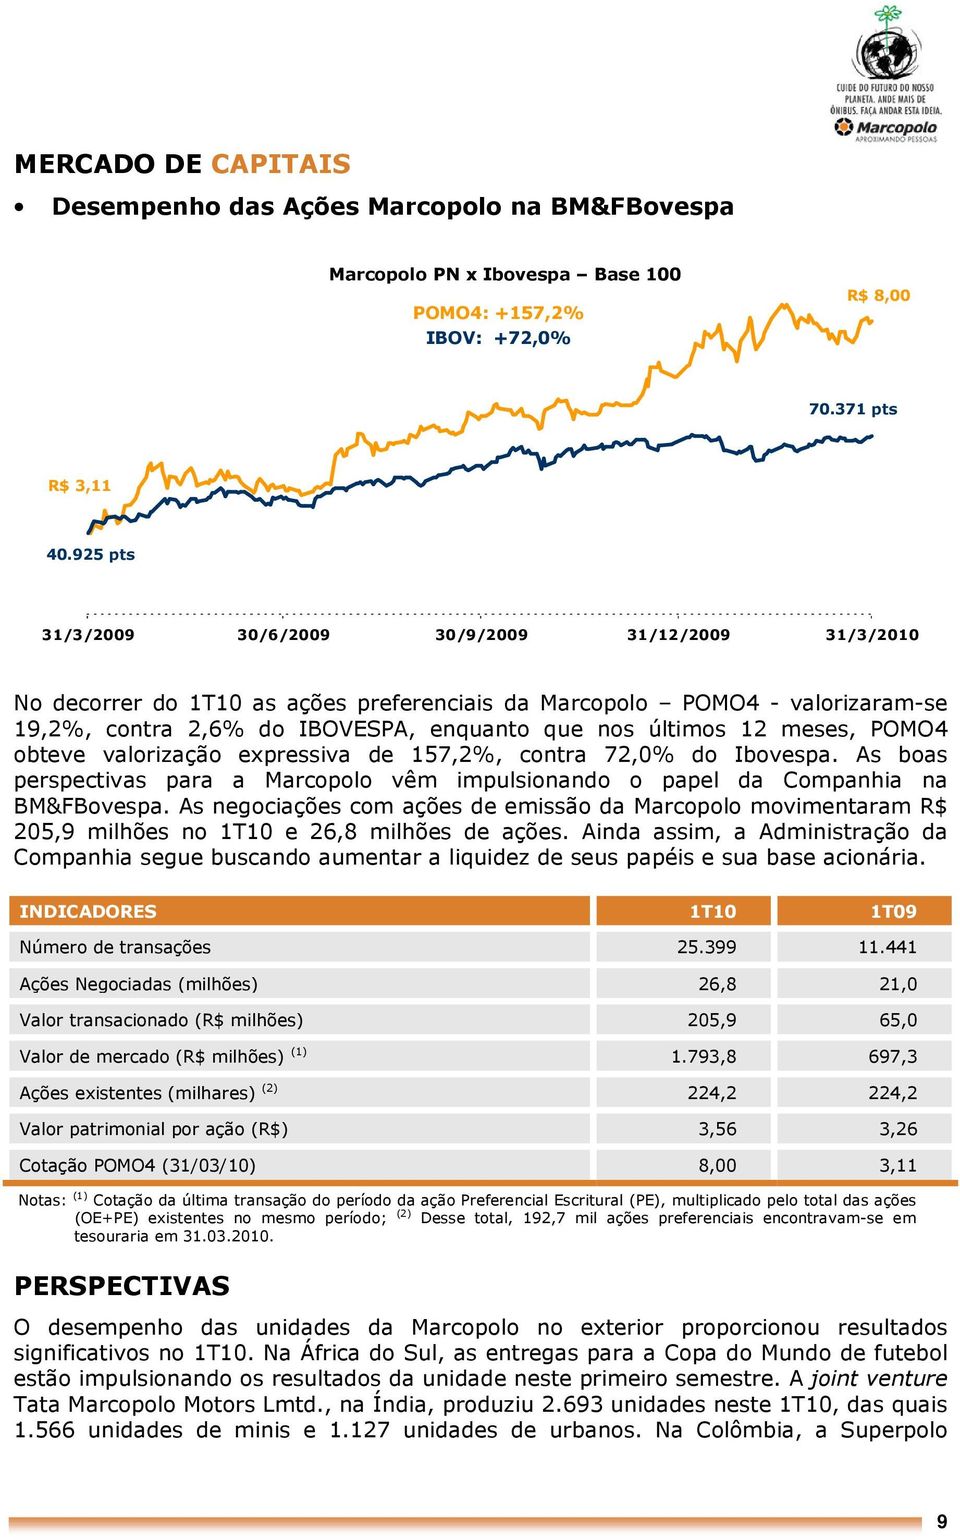 meses, POMO4 obteve valorização expressiva de 157,2%, contra 72,0% do Ibovespa. As boas perspectivas para a Marcopolo vêm impulsionando o papel da Companhia na BM&FBovespa.